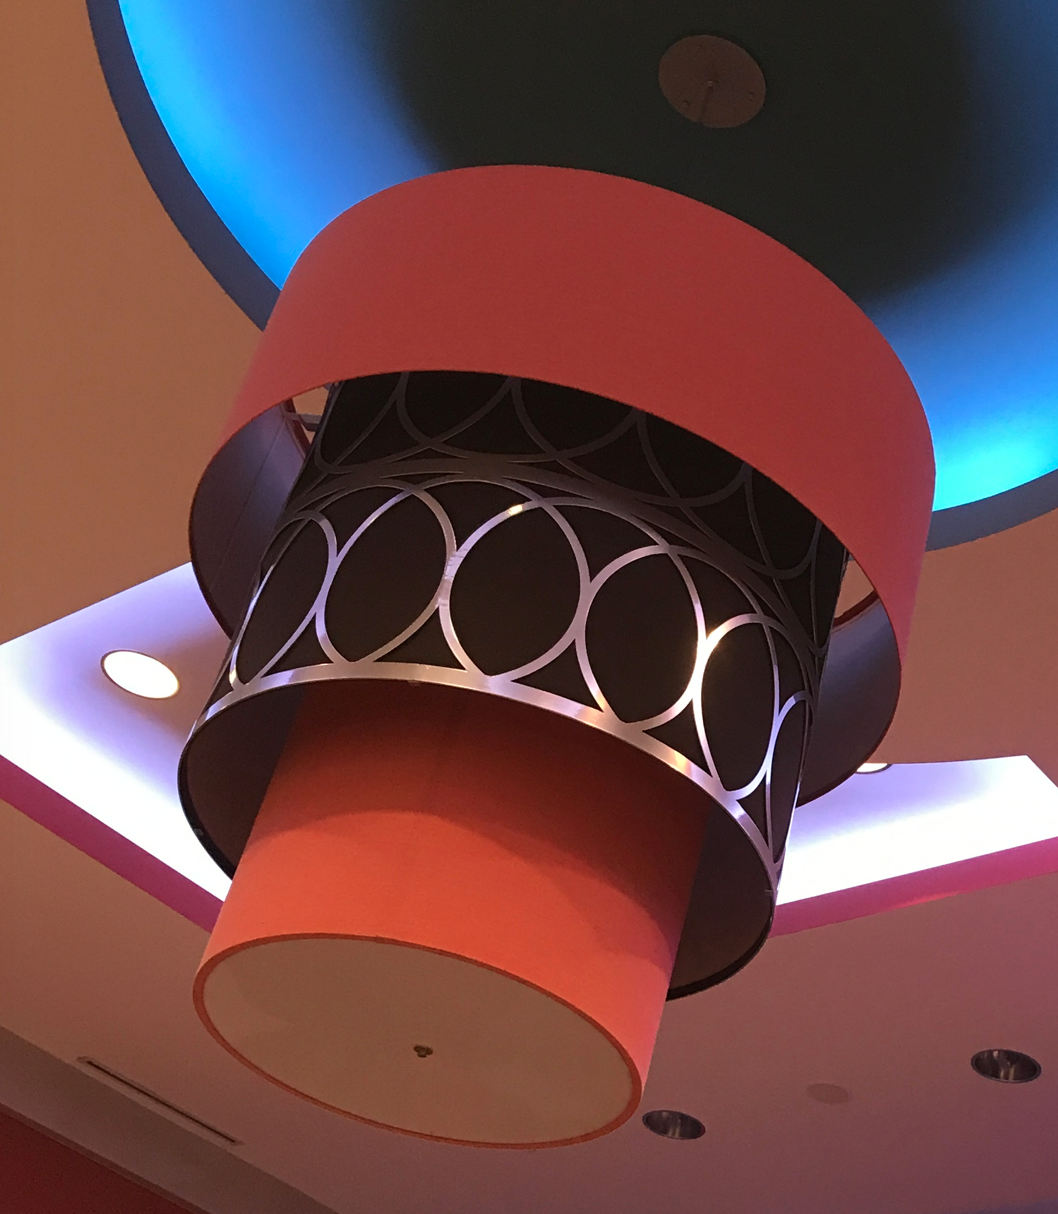 Vesica Piscis ring around hotel ceiling fixture